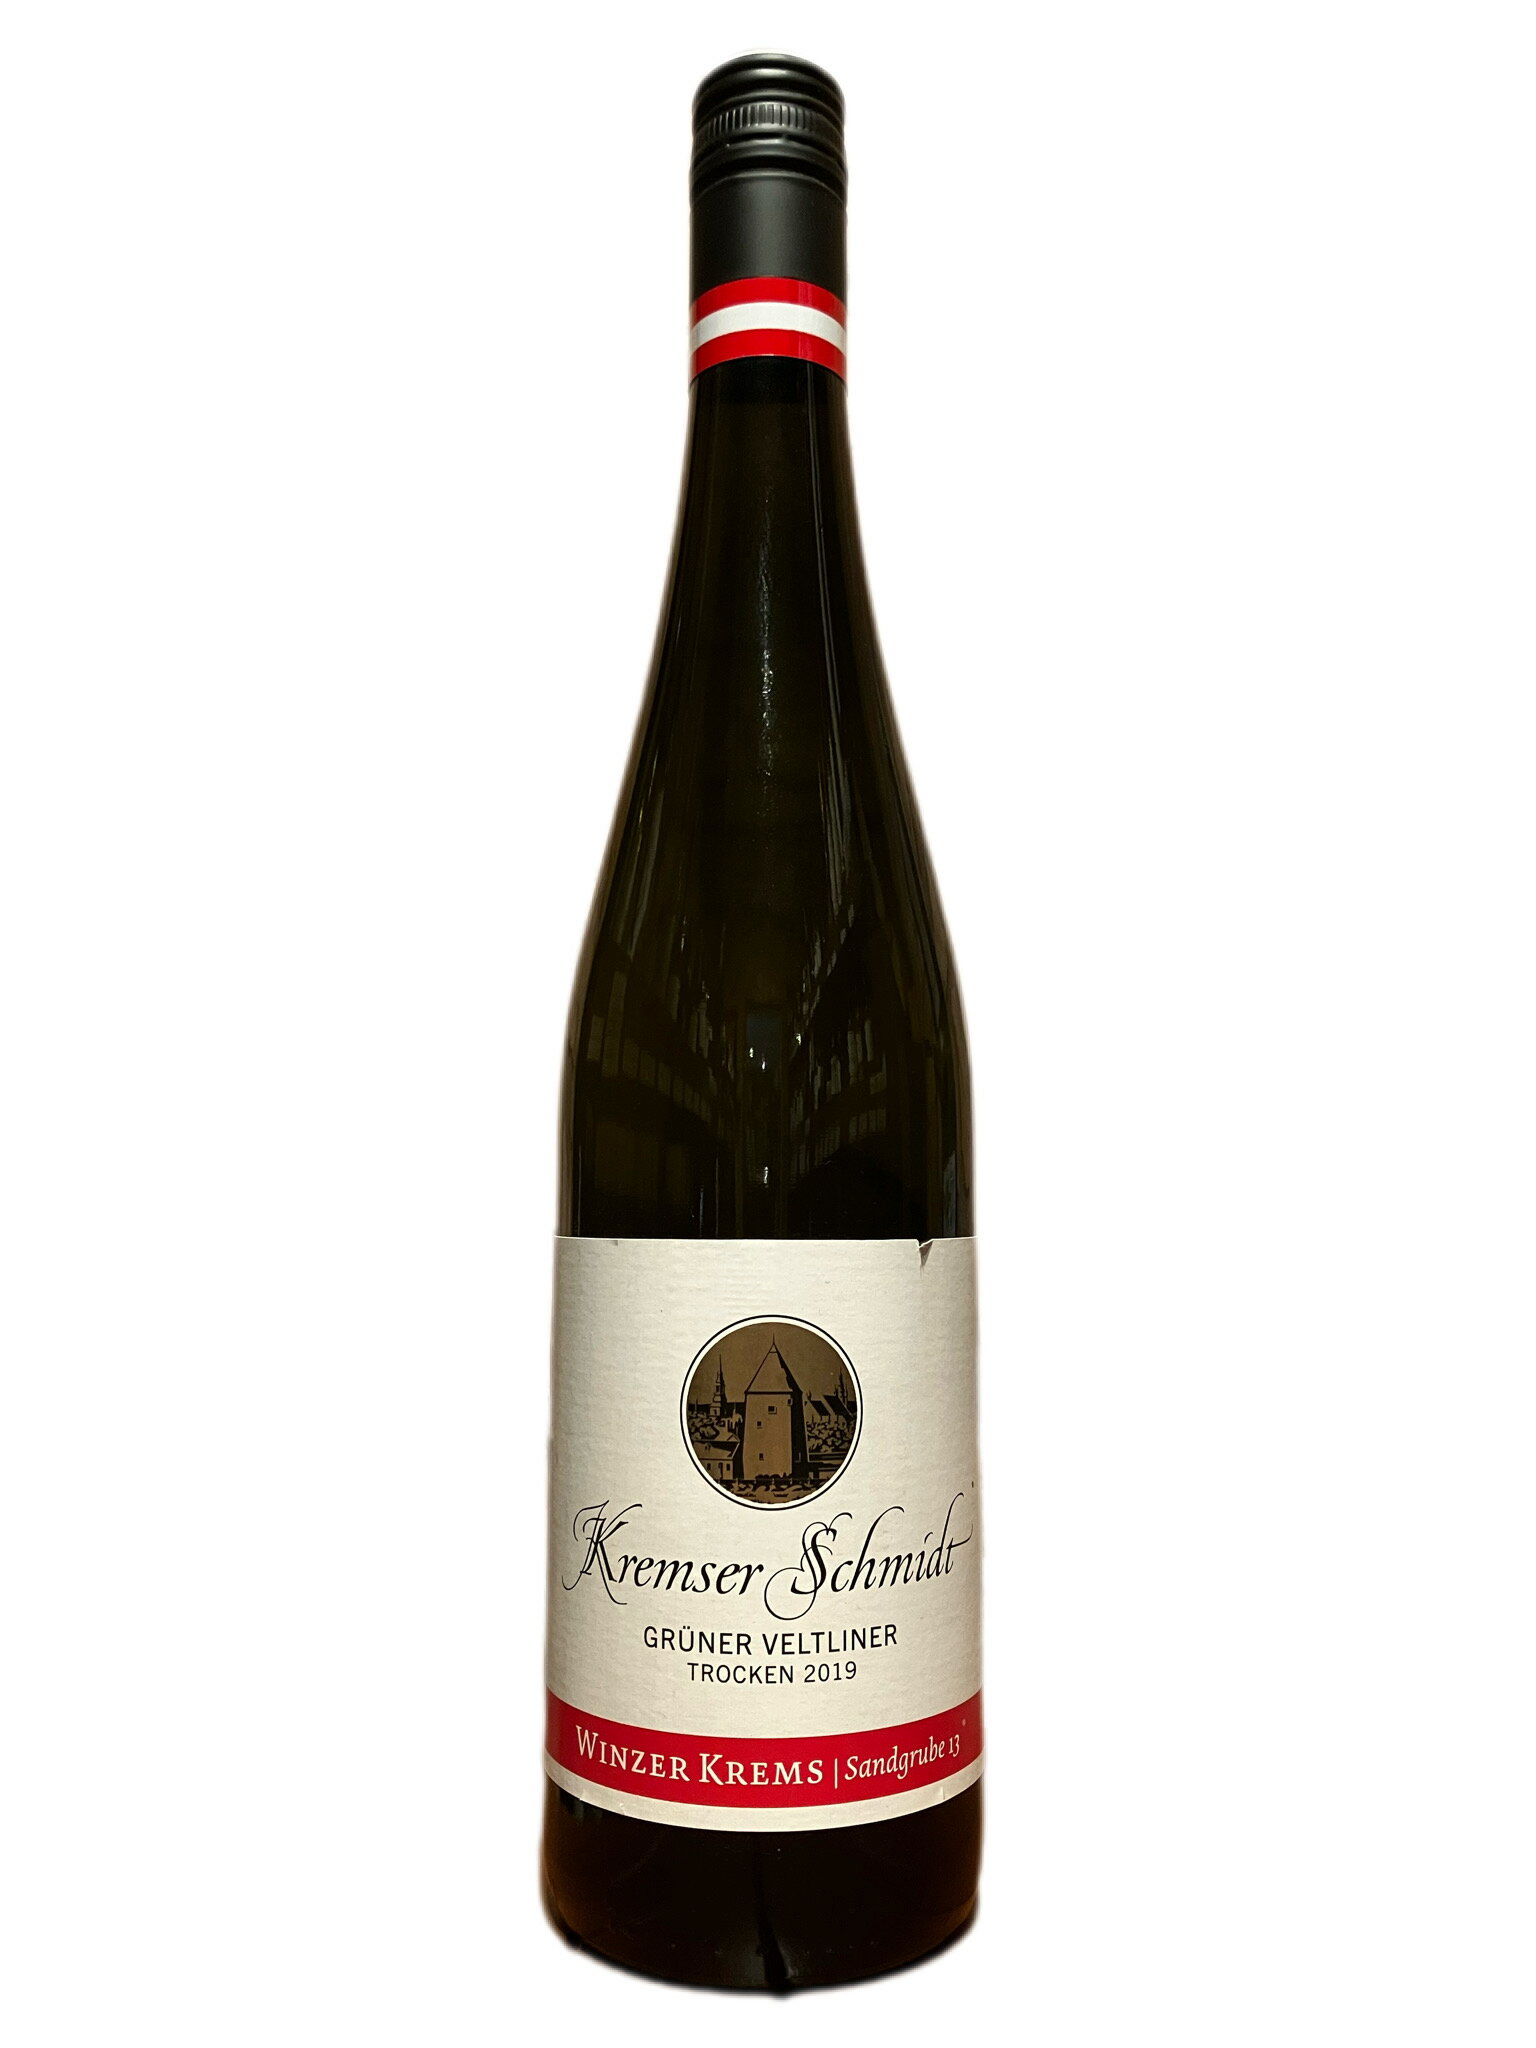 クレムザー シュミット グリューナー フェルトリーナー 赤ワイン 750ml オーストリア